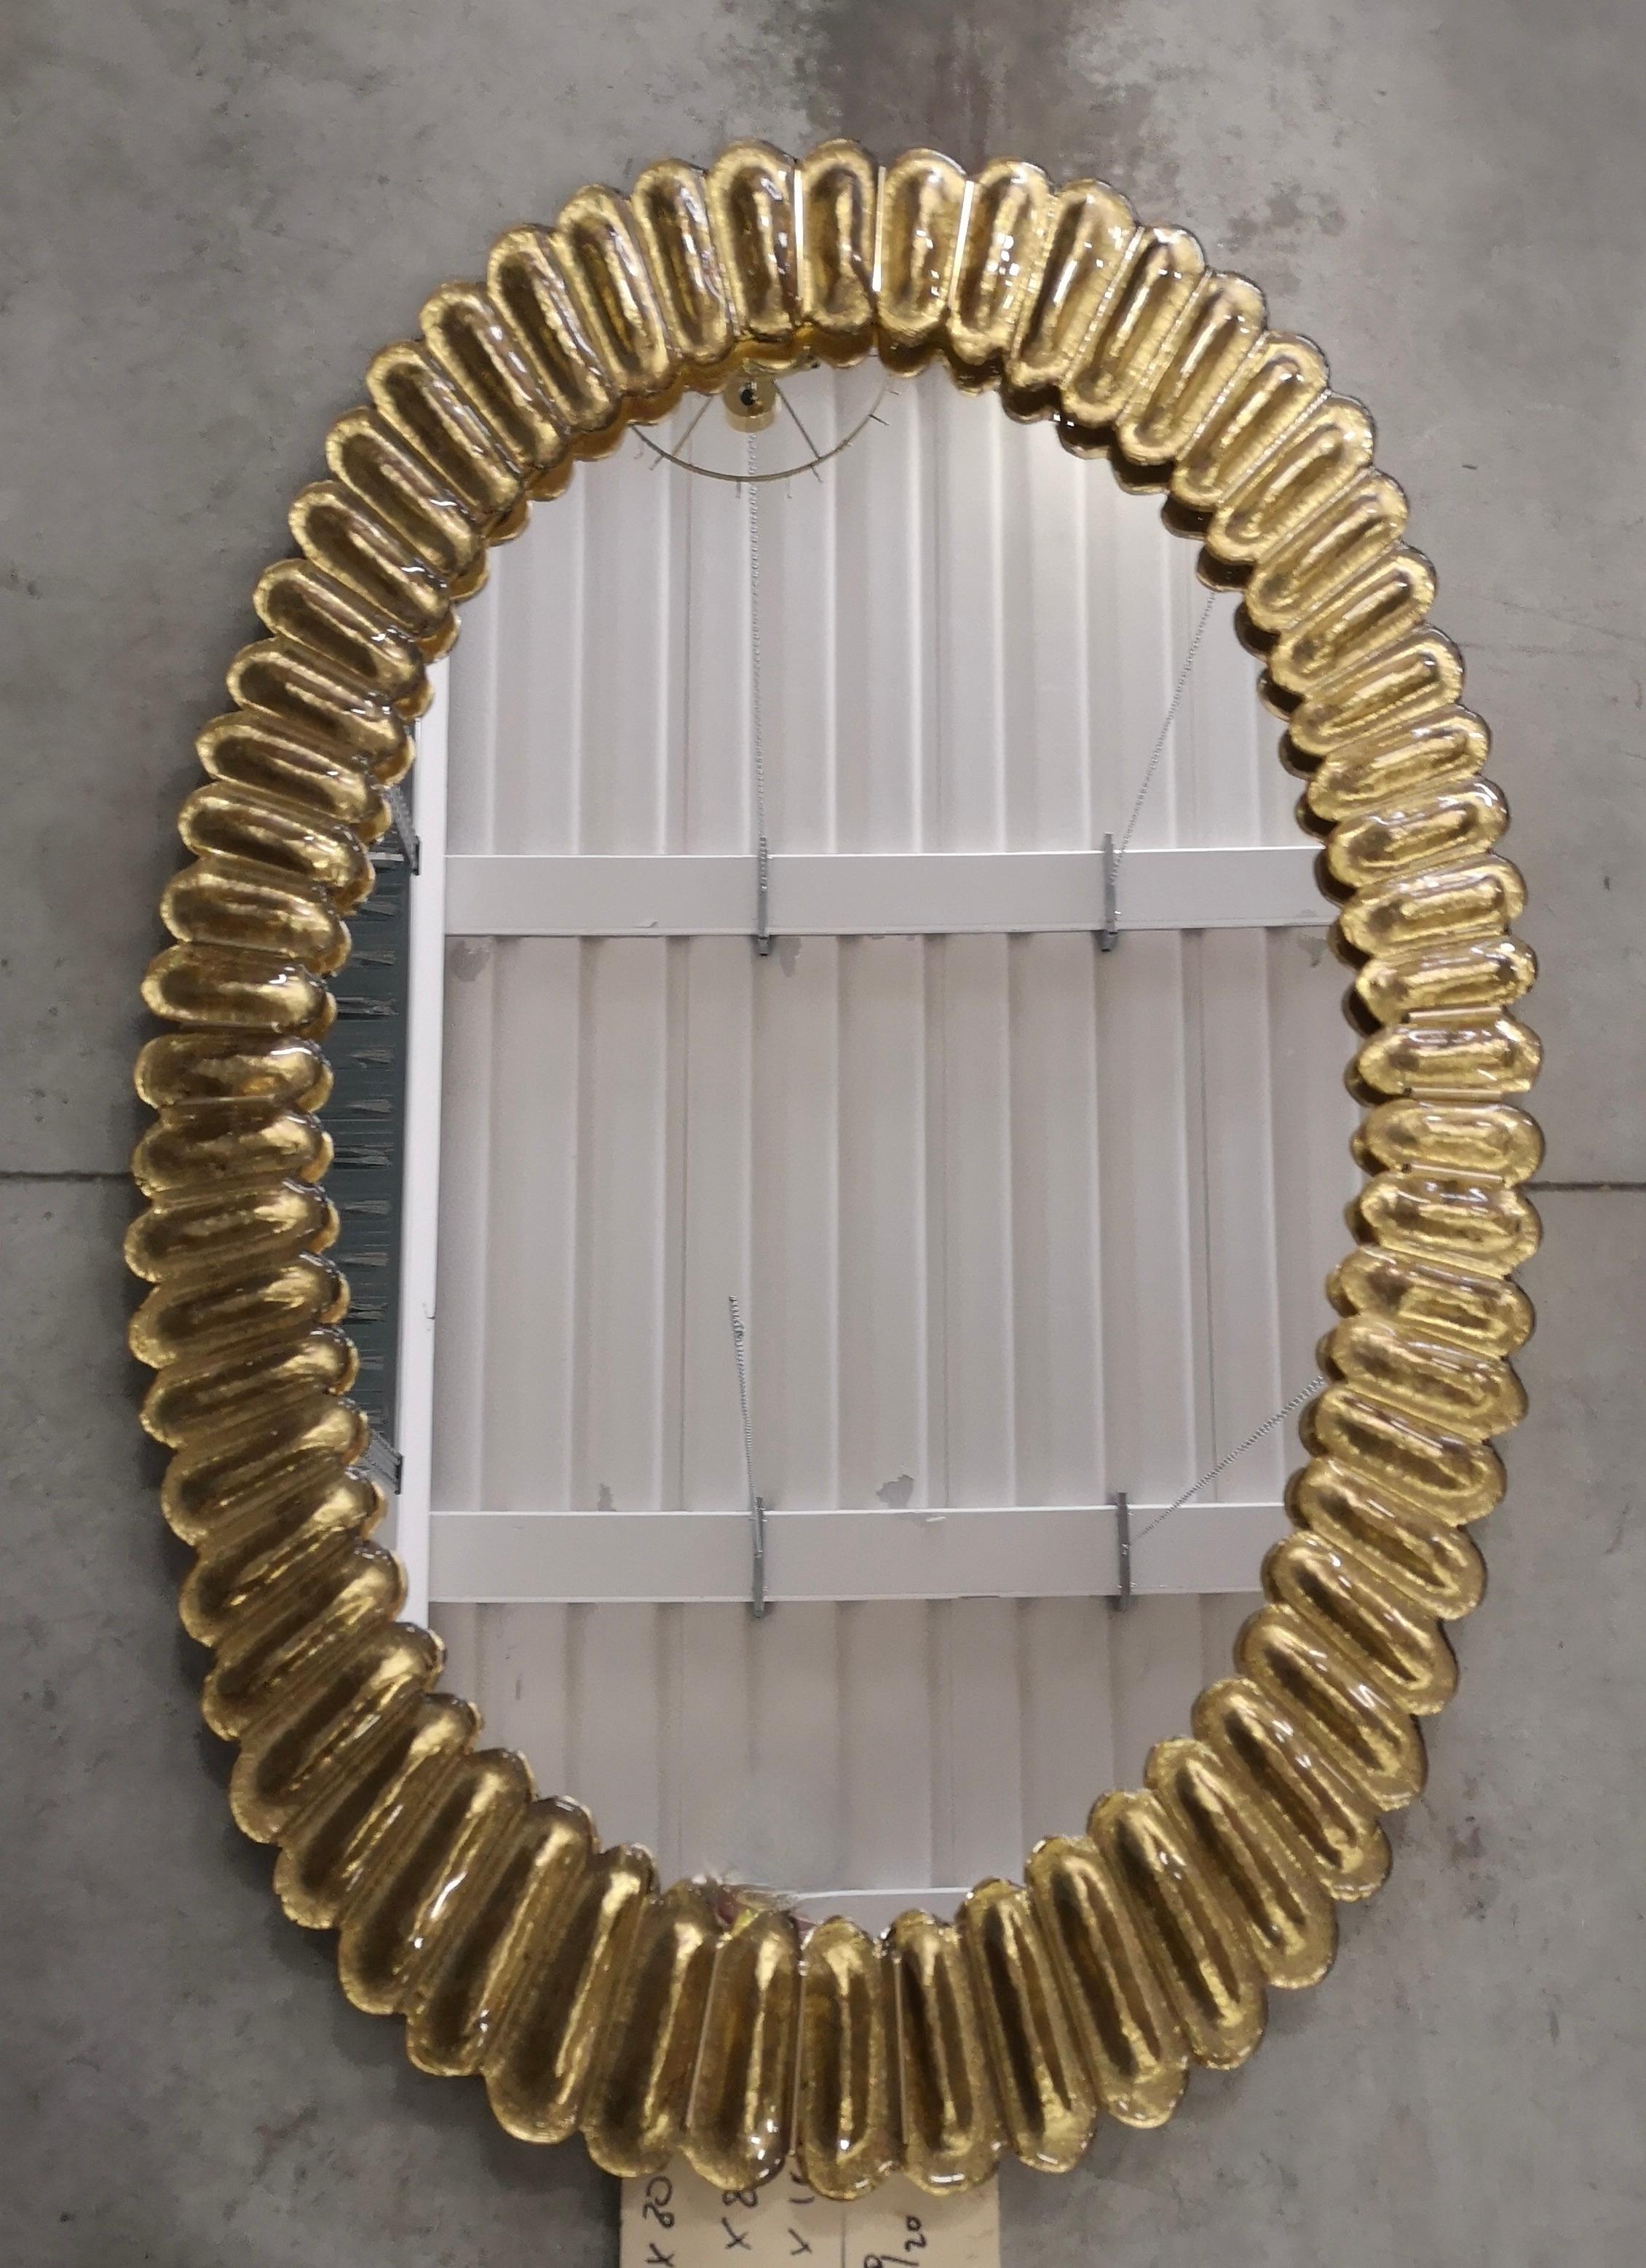 Wunderschöner Spiegel aus goldfarbenem Murano-Glas, Venedig. Ein Spiegel, der allein Ihr Zuhause einrichtet.

Der Spiegel hat eine Rückwand aus Holz, auf der vier goldene Murano-Glasscheiben montiert sind, die ein Oval bilden, wie auf dem Foto zu